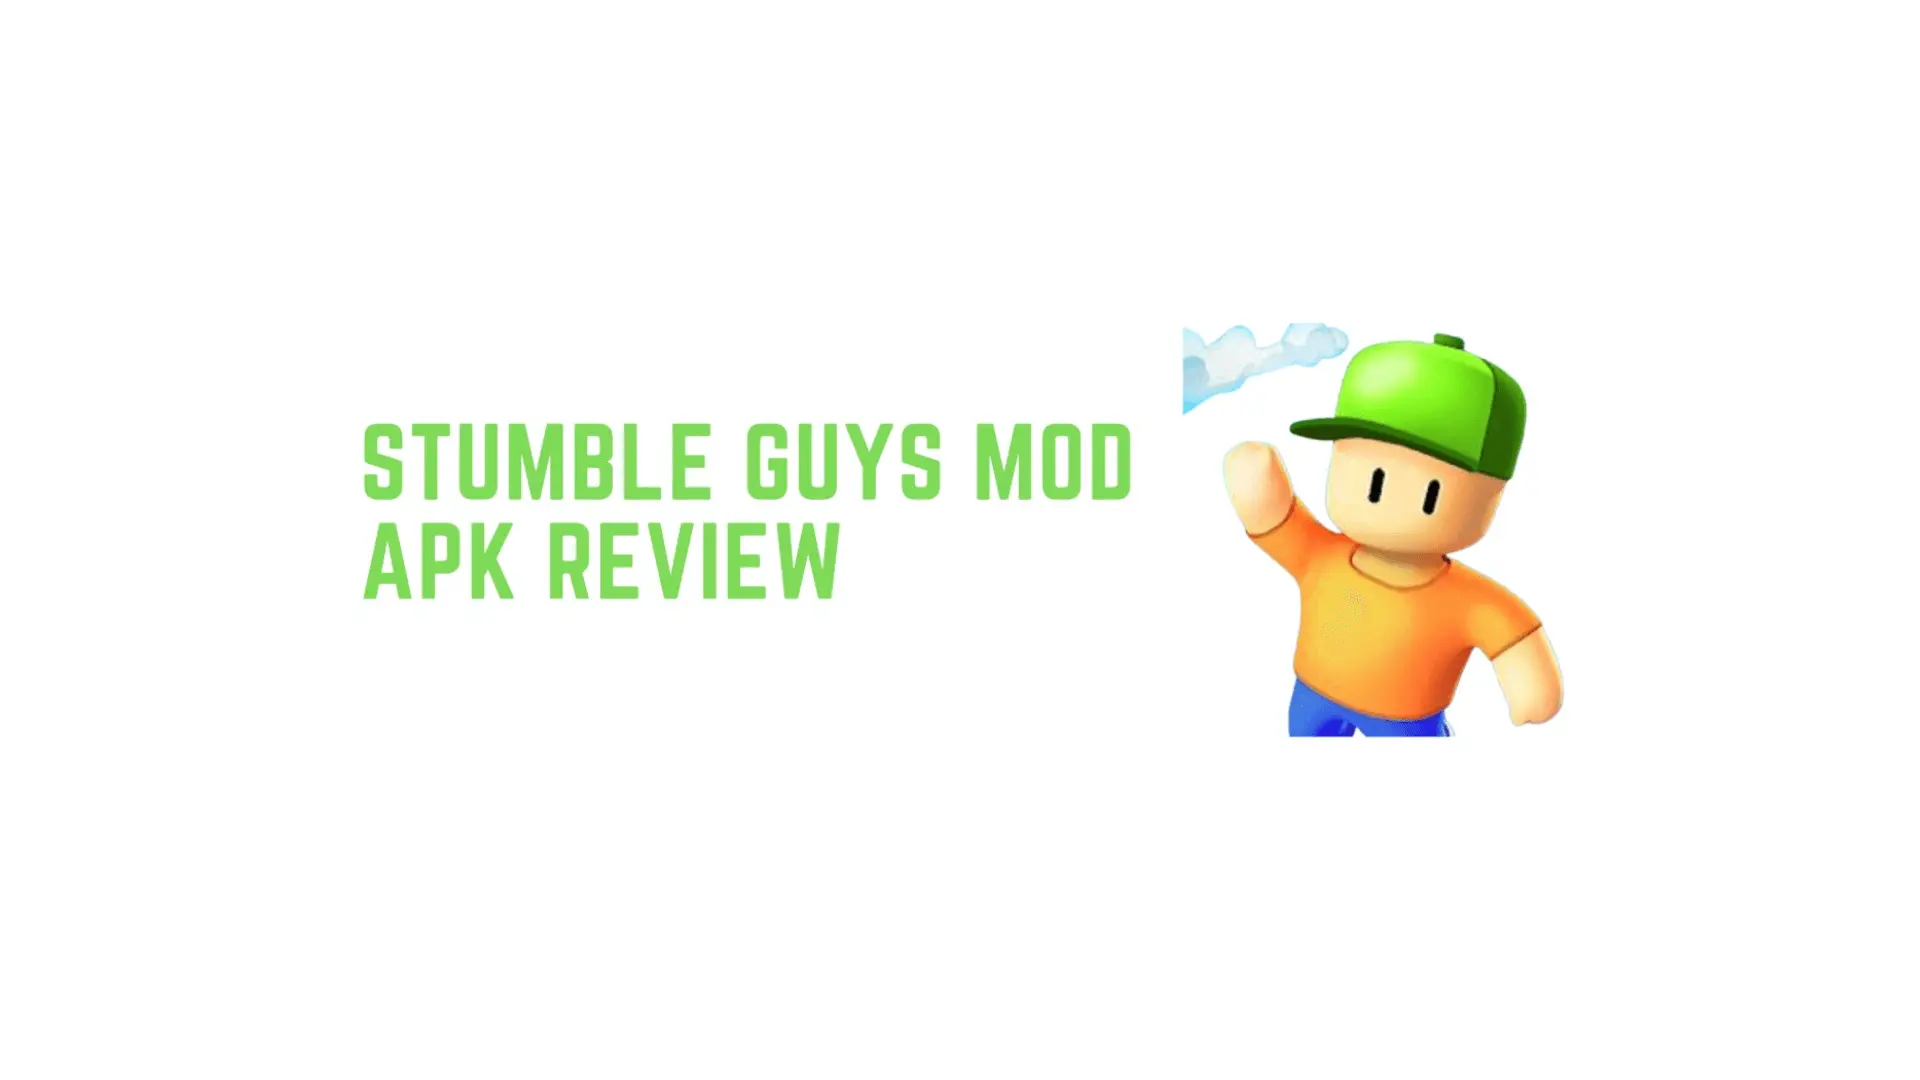 Stumble Guys MOD APK review